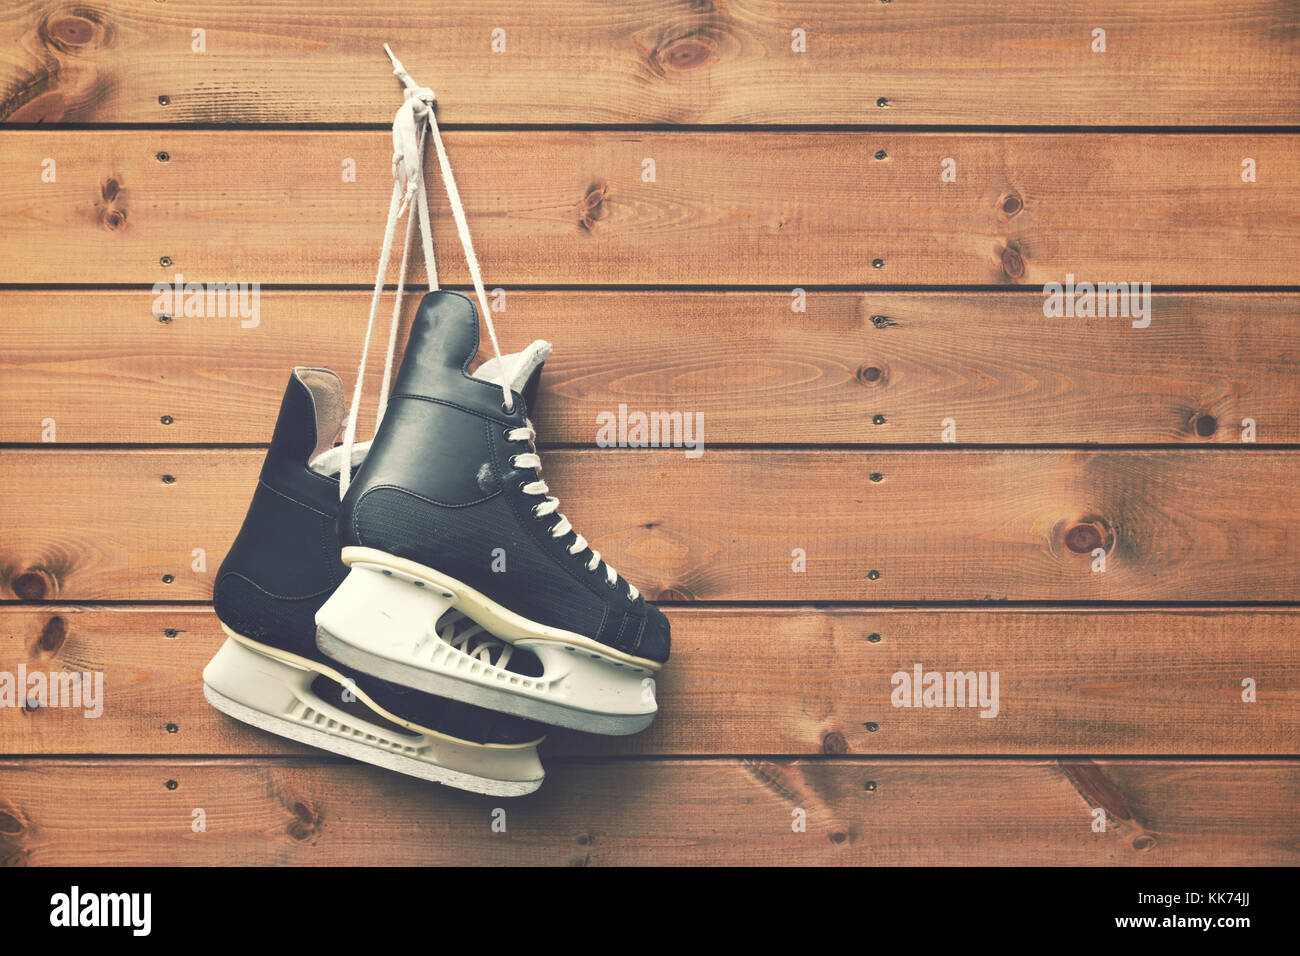 Eishockey Schlittschuhe hängen an Nagel auf Holzbrett Hintergrund Stockfoto